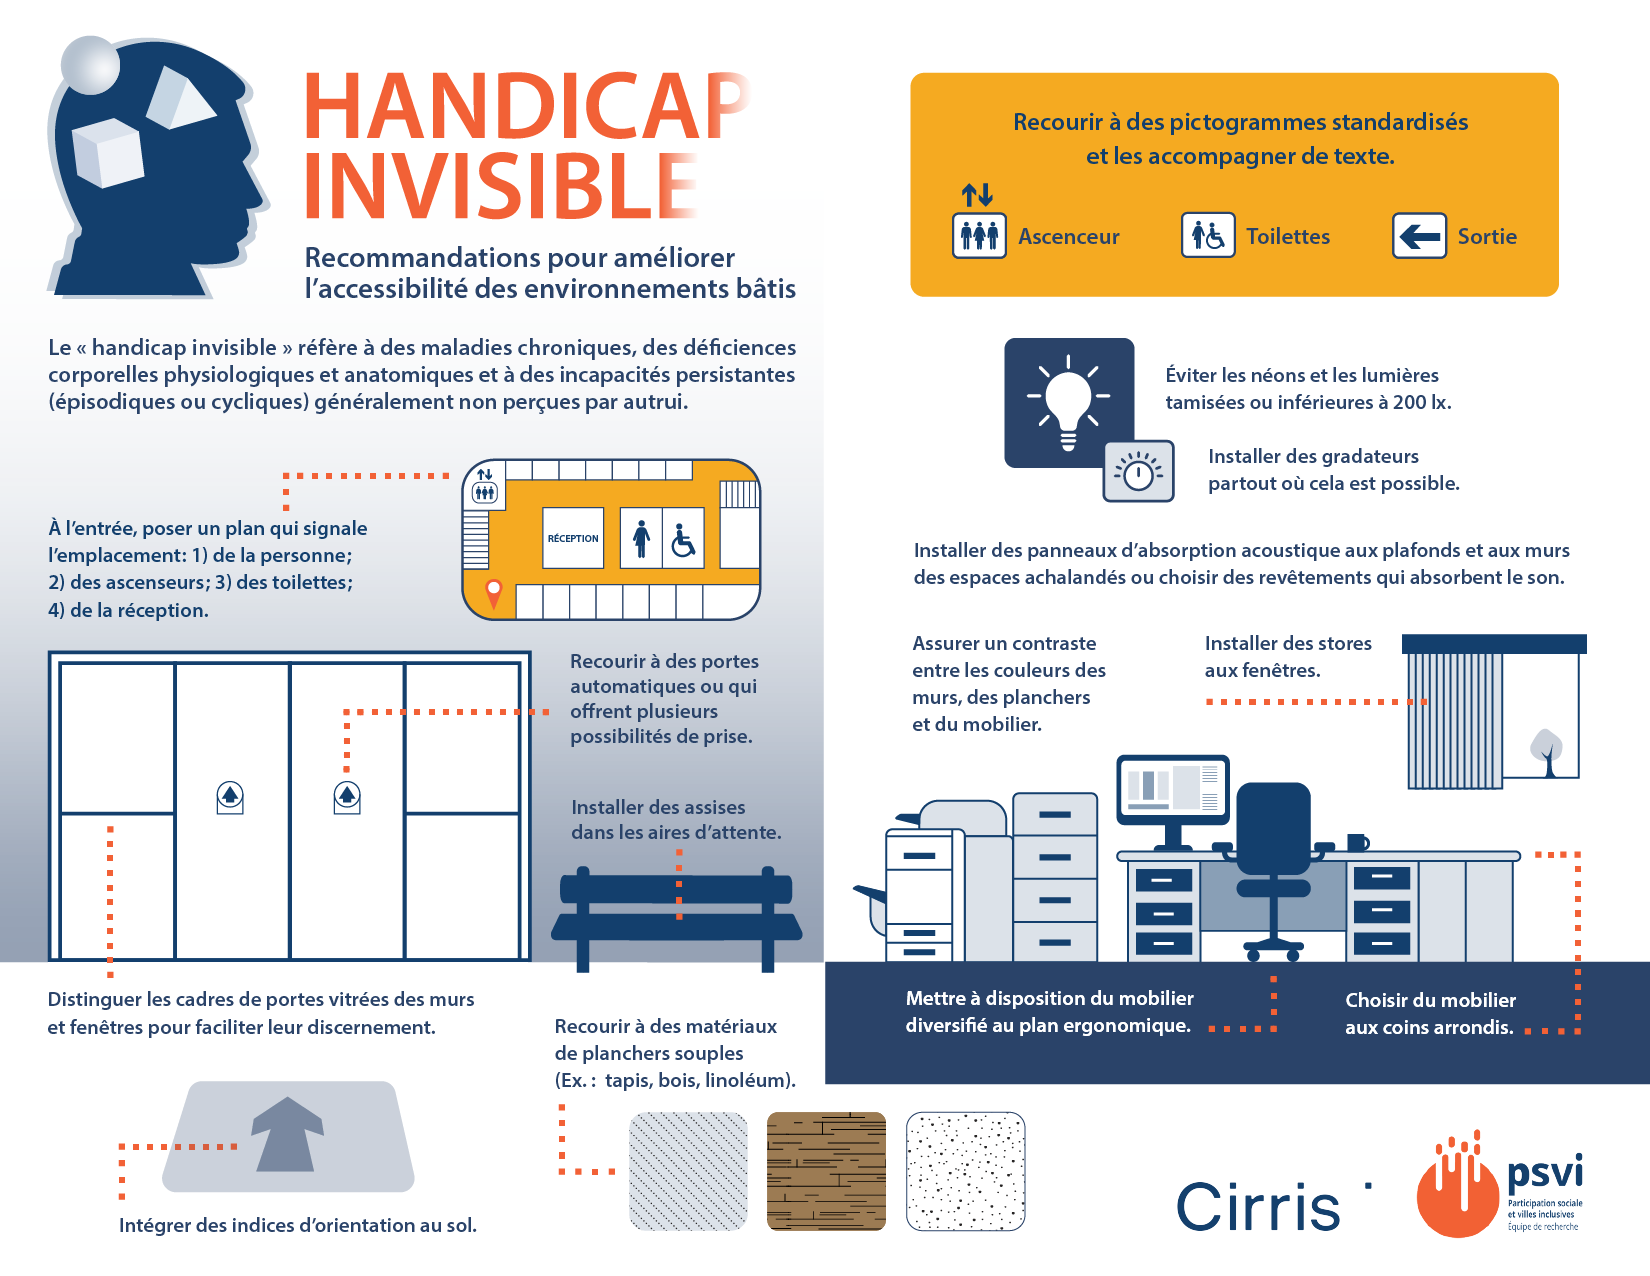 Infographie - Handicap invisible: Recommandations pour améliorer l'accessibilité des environnements bâtis